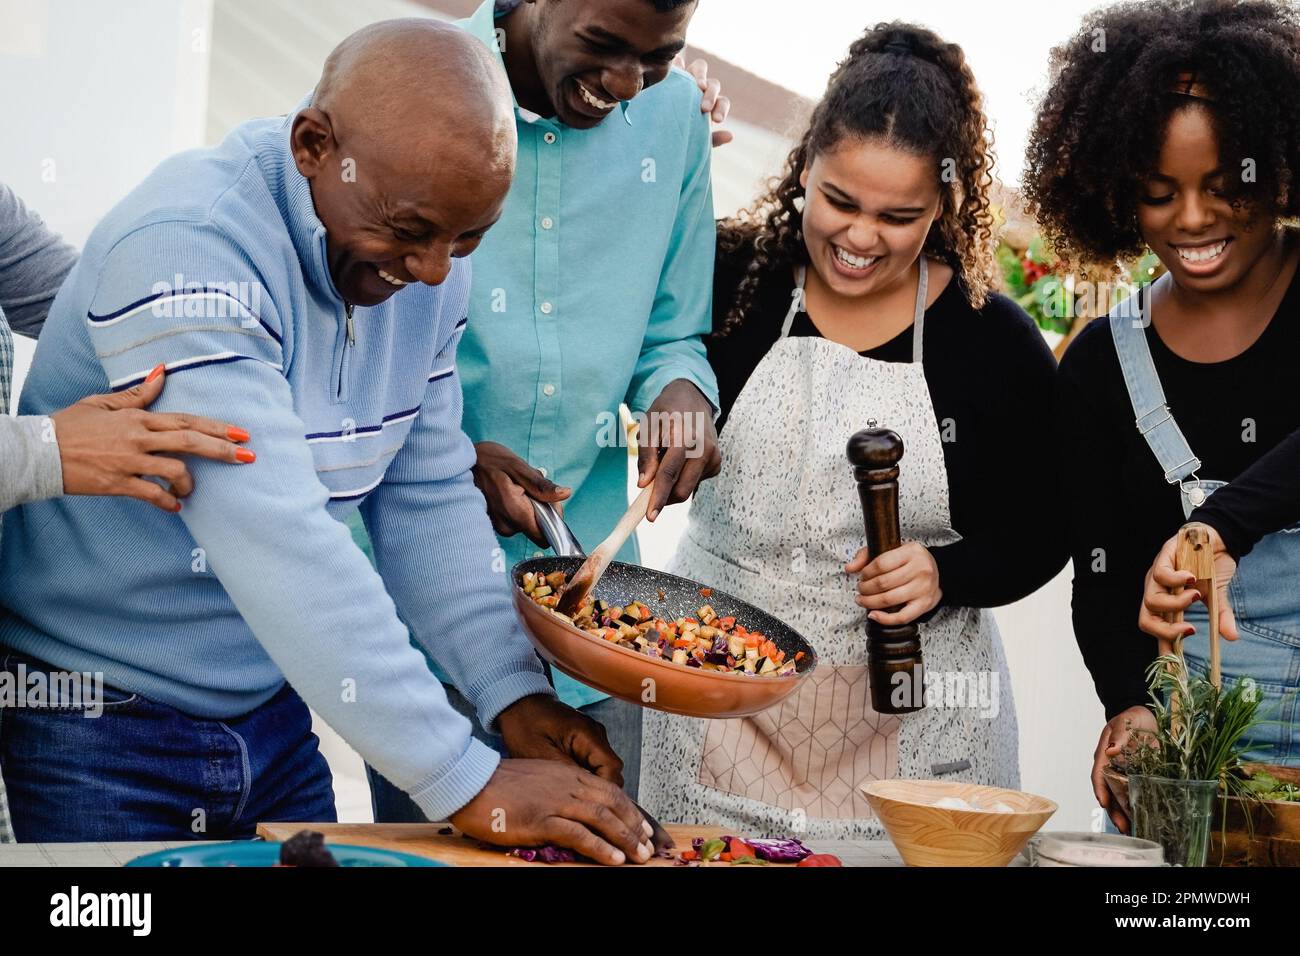 Cuisine extérieure: Bonne famille africaine cuisiner ensemble dans le patio - Père, mère, fille, frère faire des repas sains dîner Banque D'Images